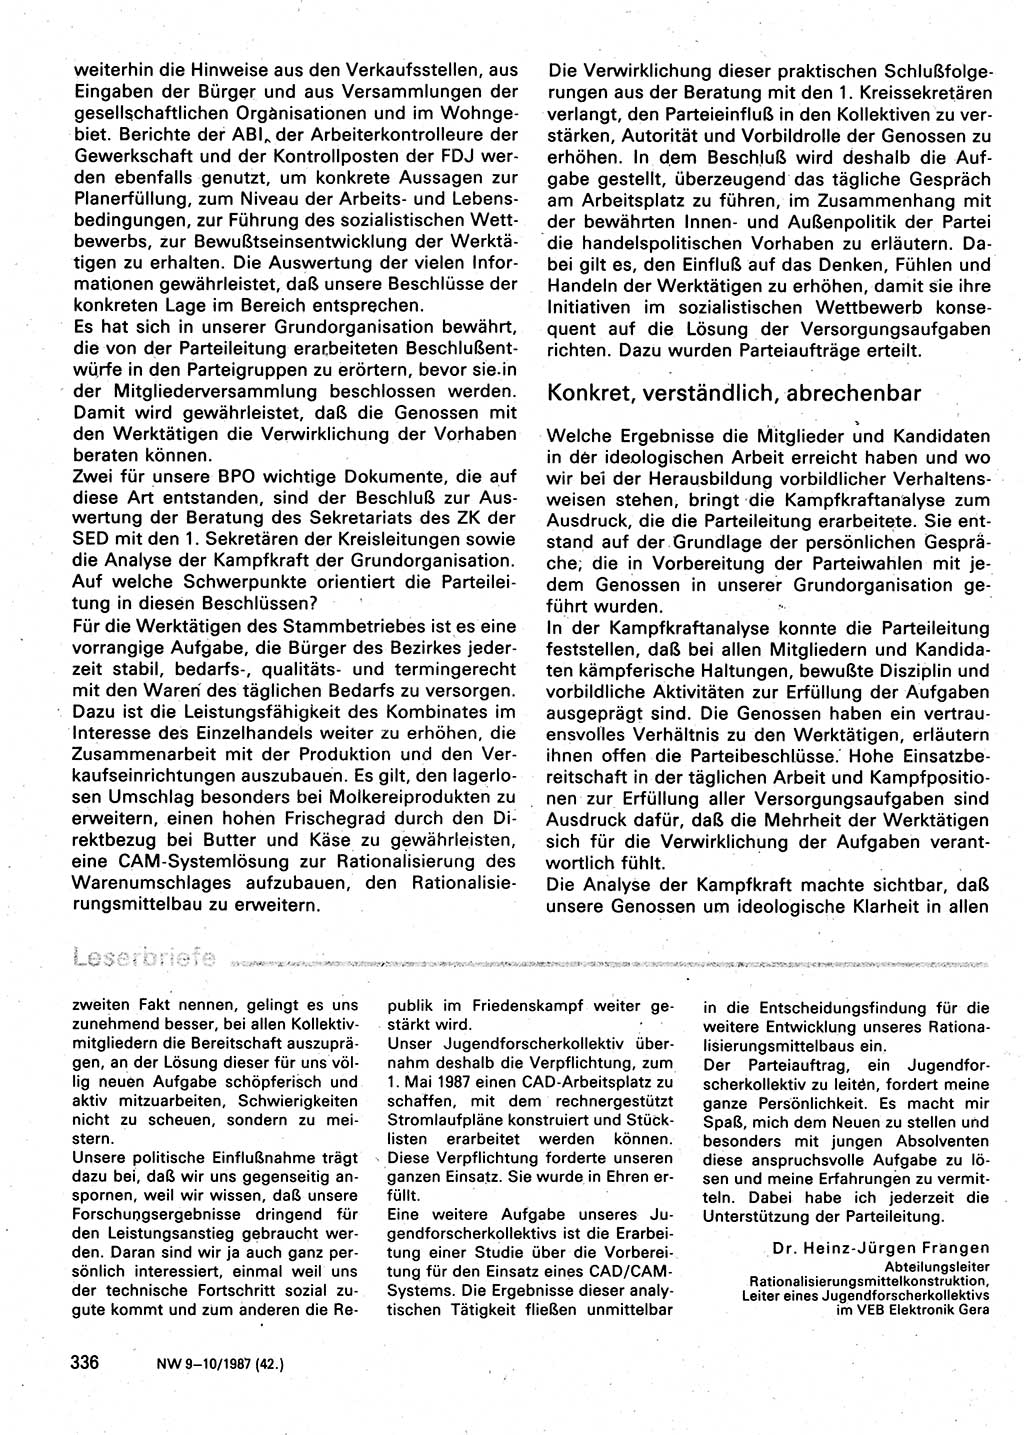 Neuer Weg (NW), Organ des Zentralkomitees (ZK) der SED (Sozialistische Einheitspartei Deutschlands) für Fragen des Parteilebens, 42. Jahrgang [Deutsche Demokratische Republik (DDR)] 1987, Seite 336 (NW ZK SED DDR 1987, S. 336)